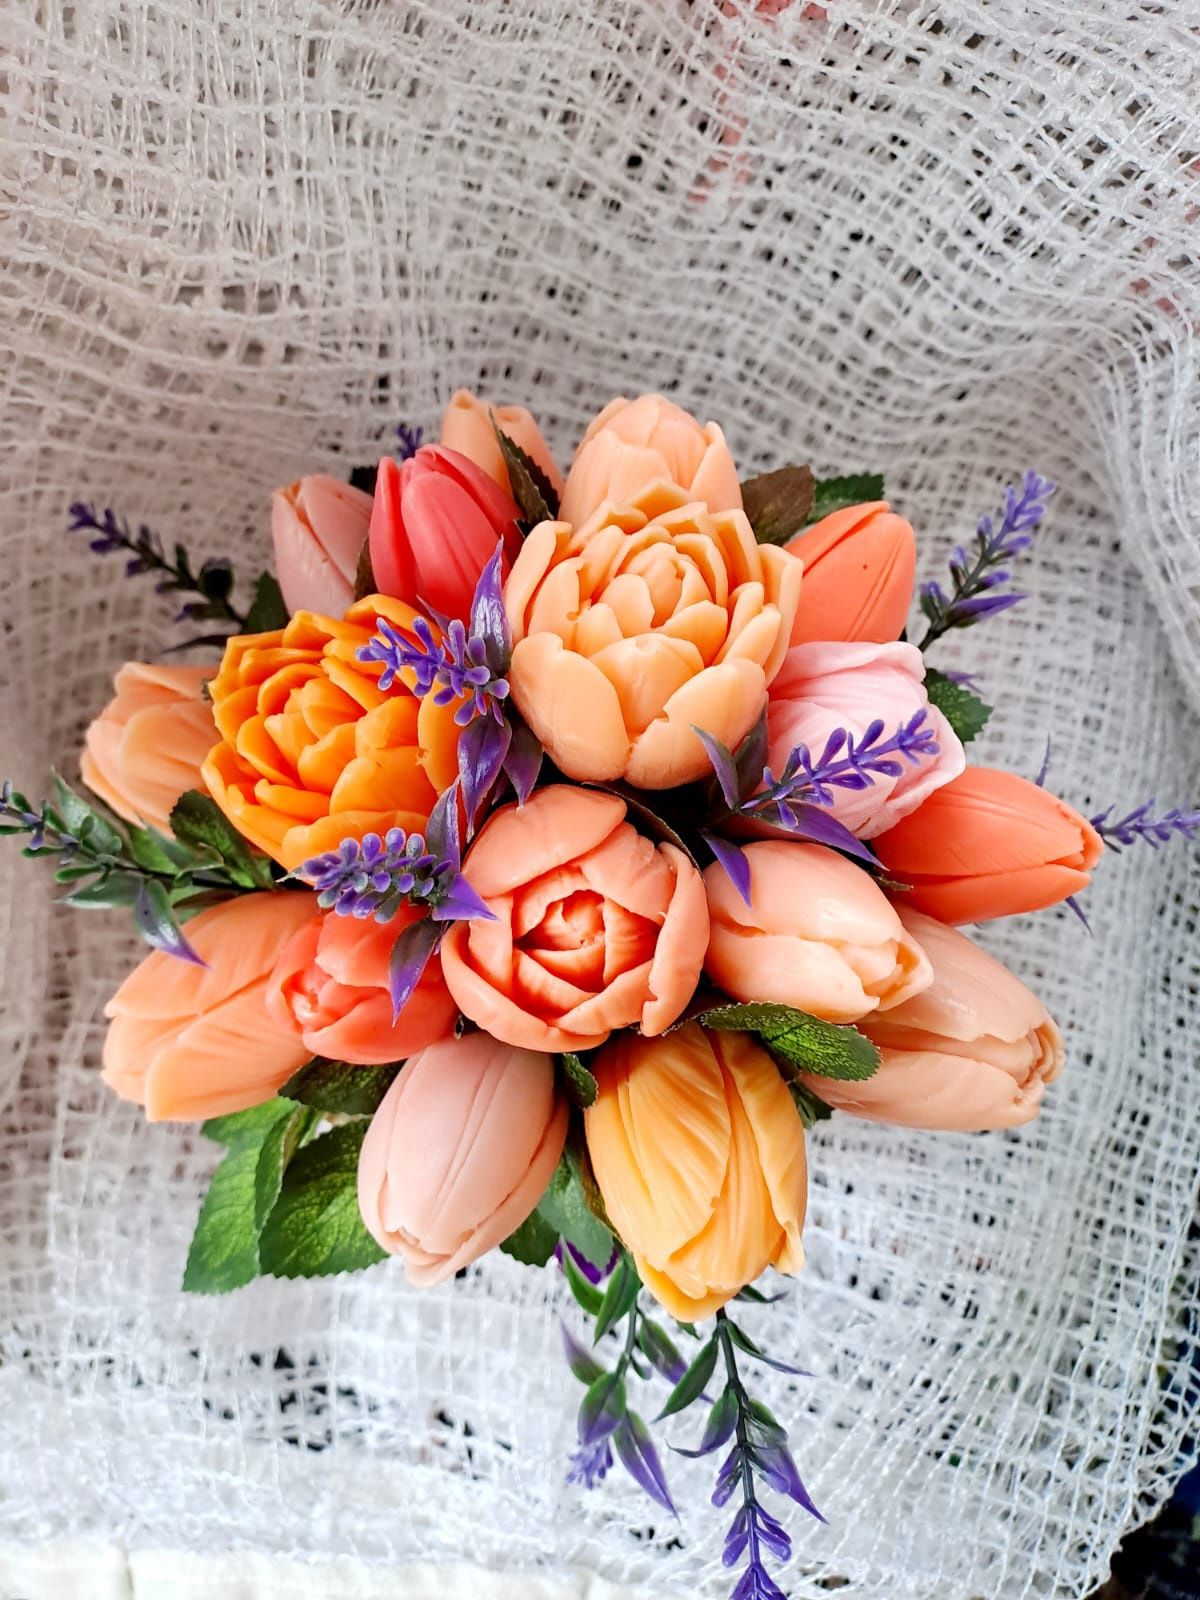 Подарок к 8 марта, к празднику - букет пионы, розы, тюльпаны